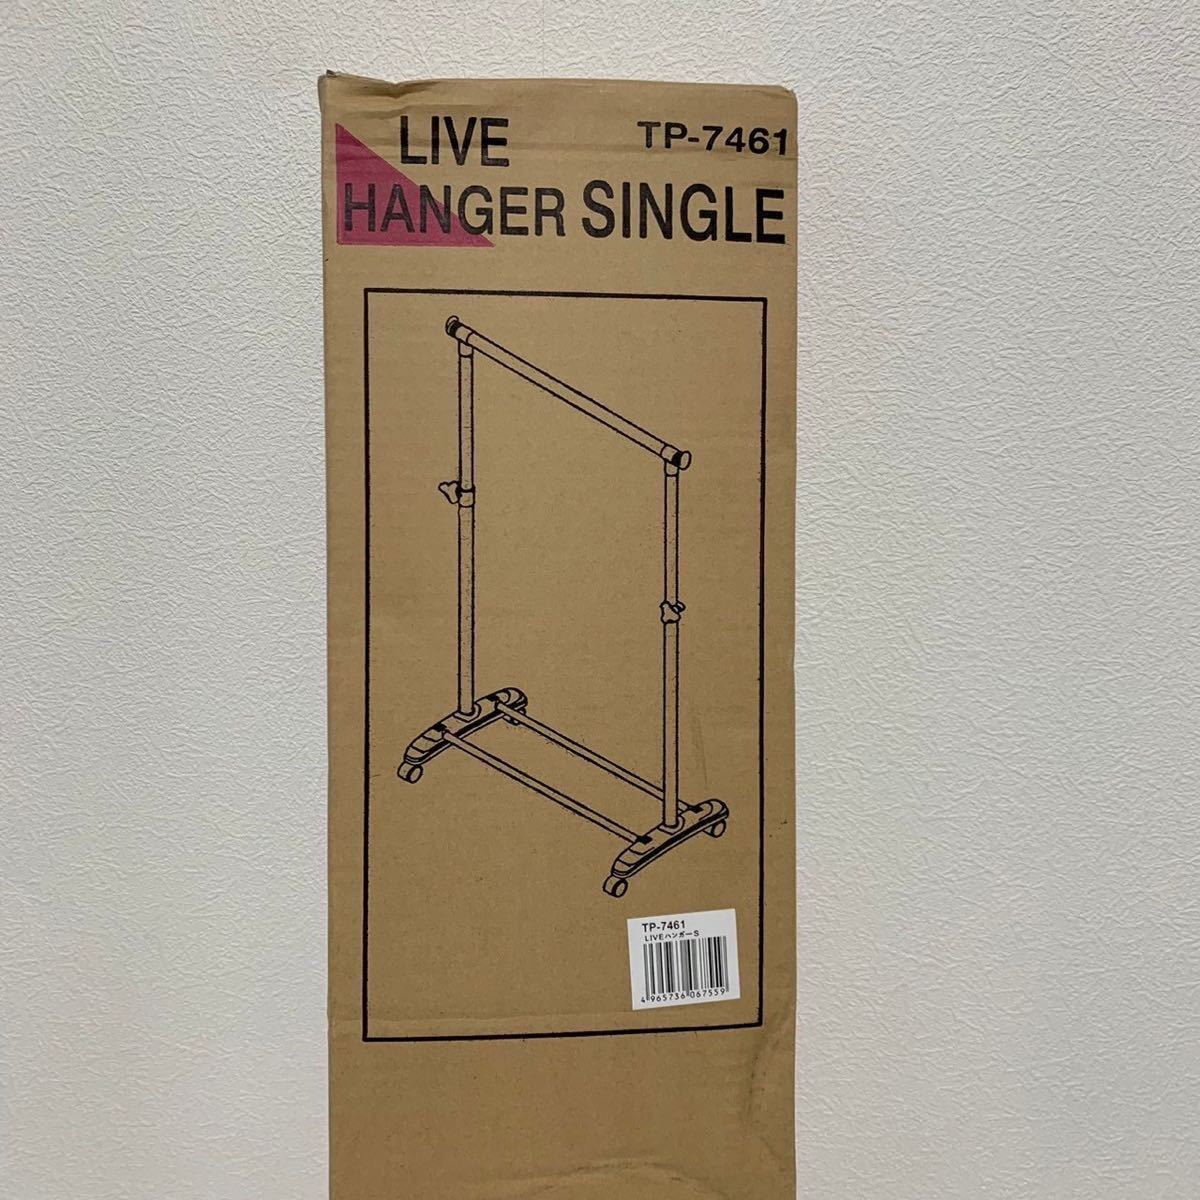 【未使用品】ハンガー ラック シングル 耐荷重 20kg 高さ調節可能 LIVE HANGER SINGLE TP-7461_画像3